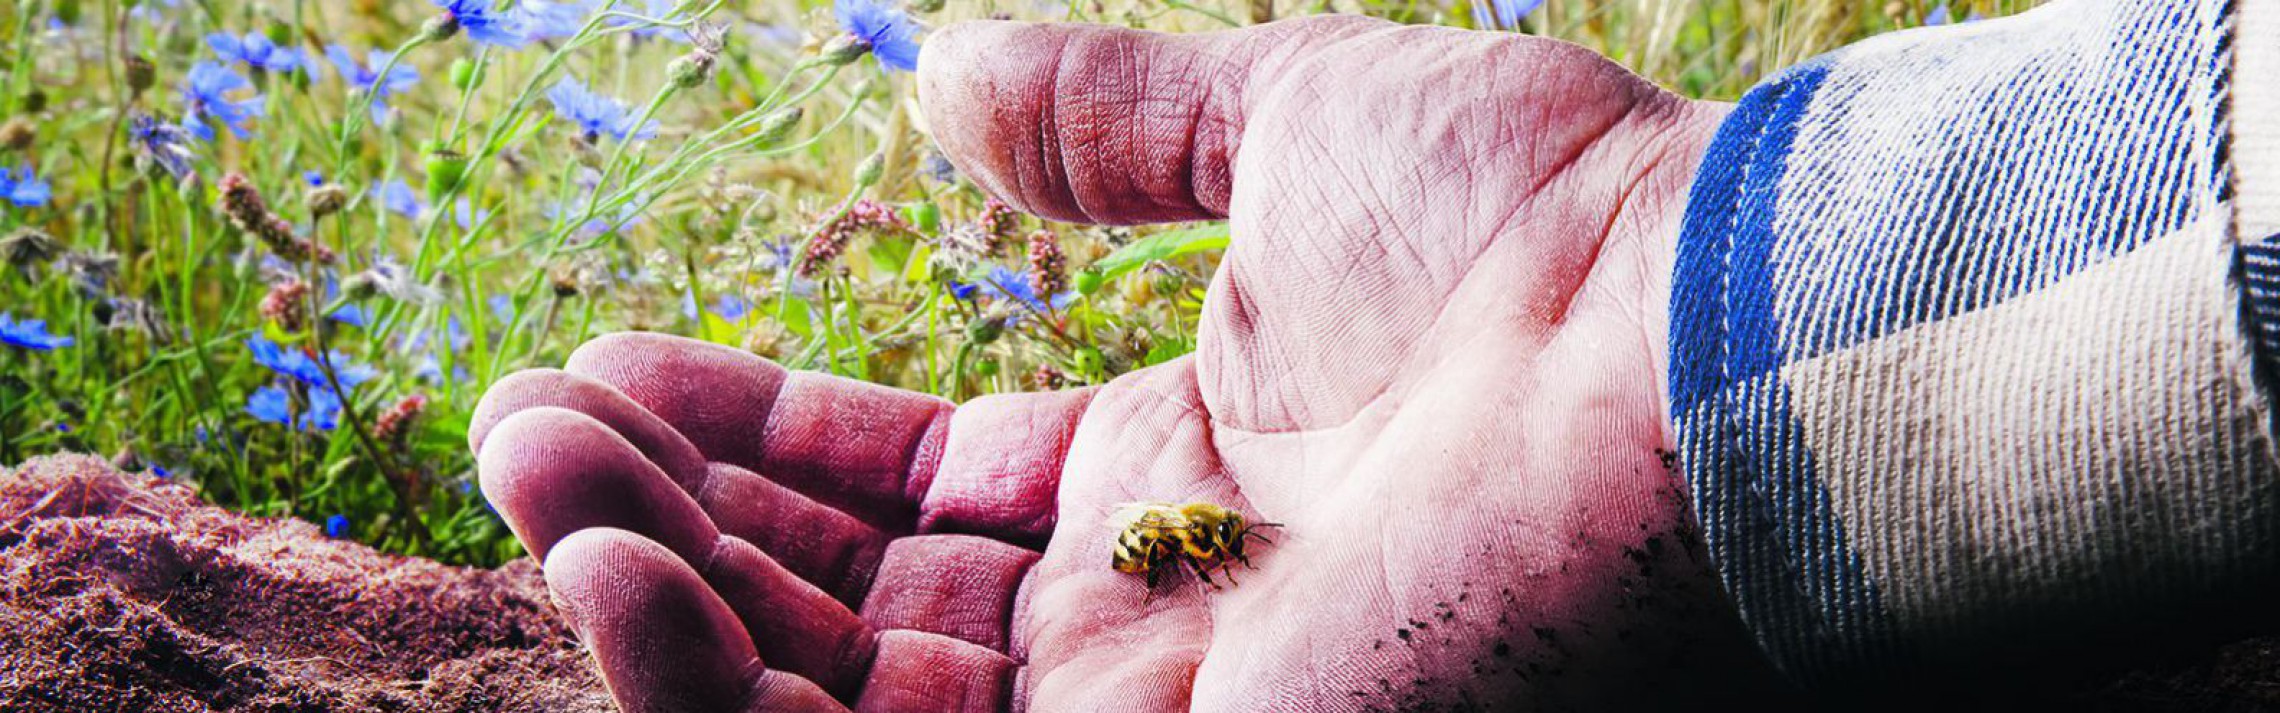 Landwirt mit Biene in der Hand